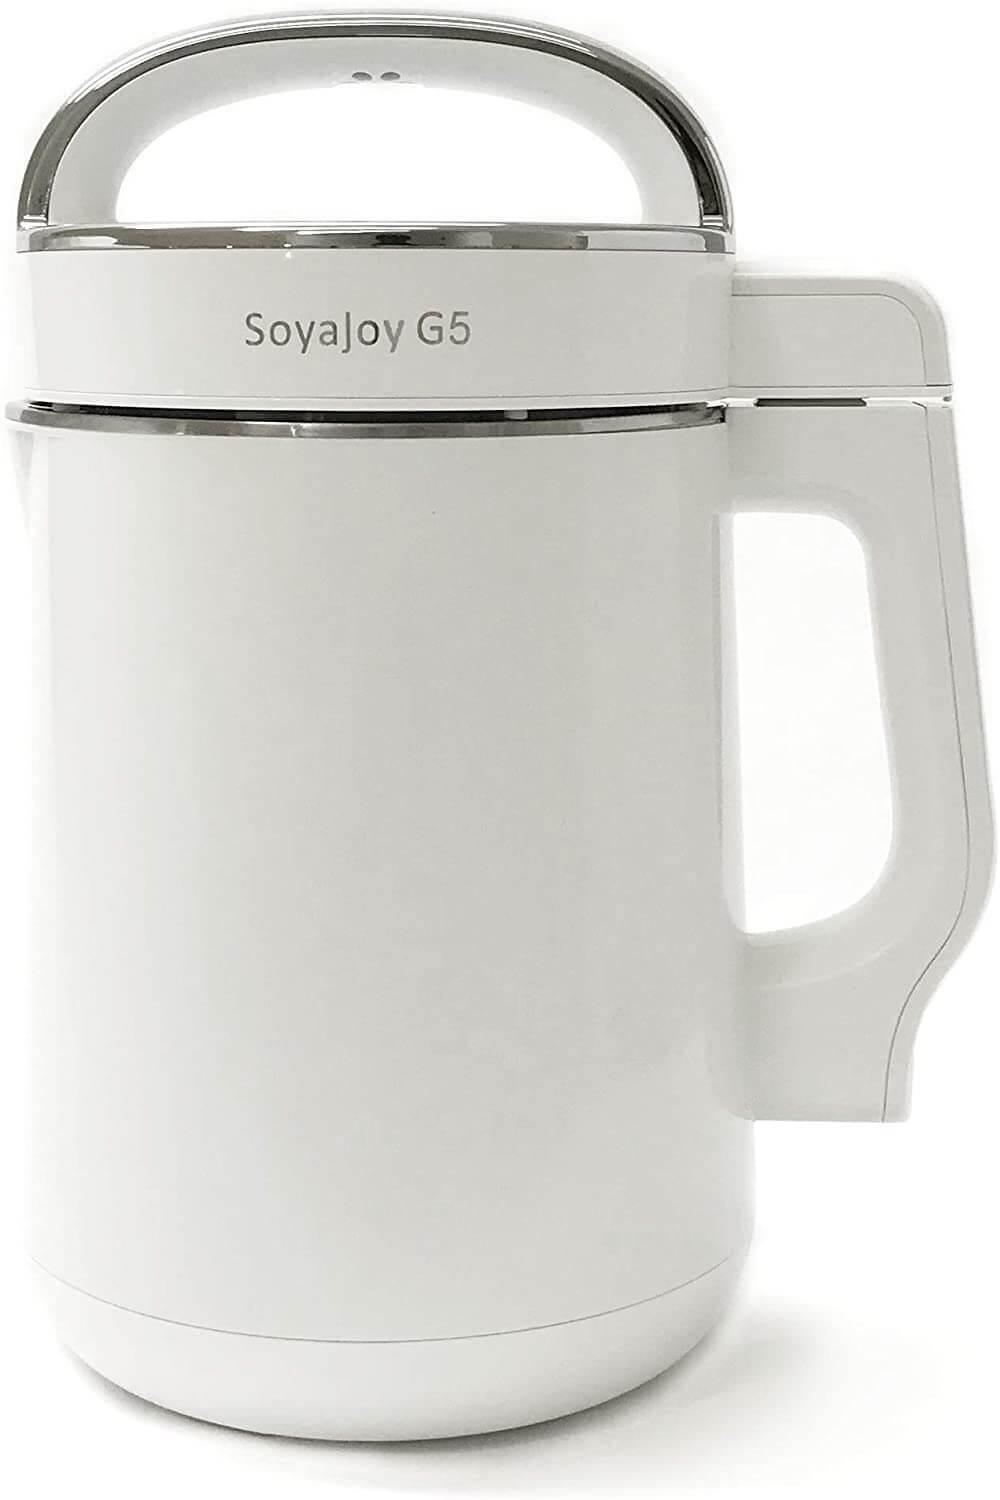 SoyaJoy G5 Soy Milk Maker